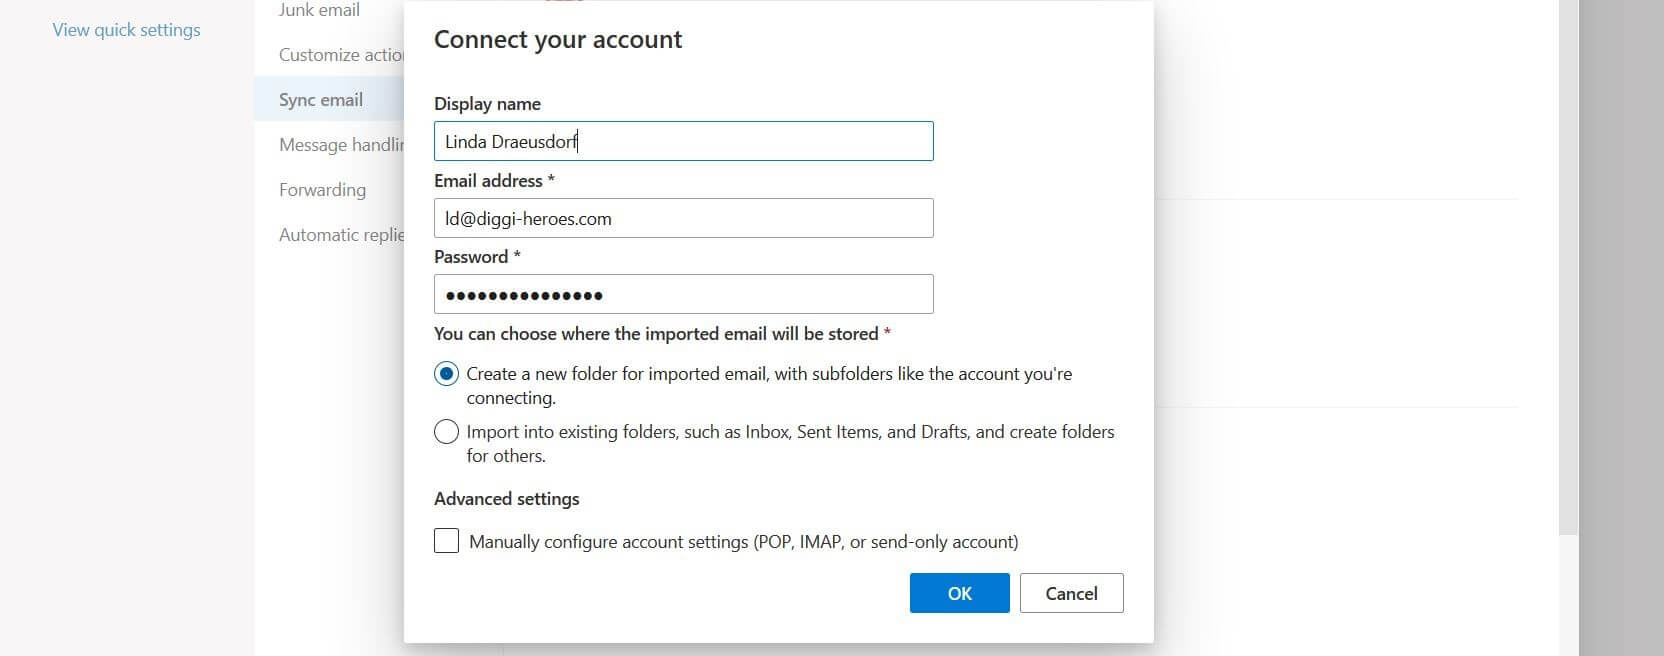 Finestra per il collegamento dell’account in Outlook sul web